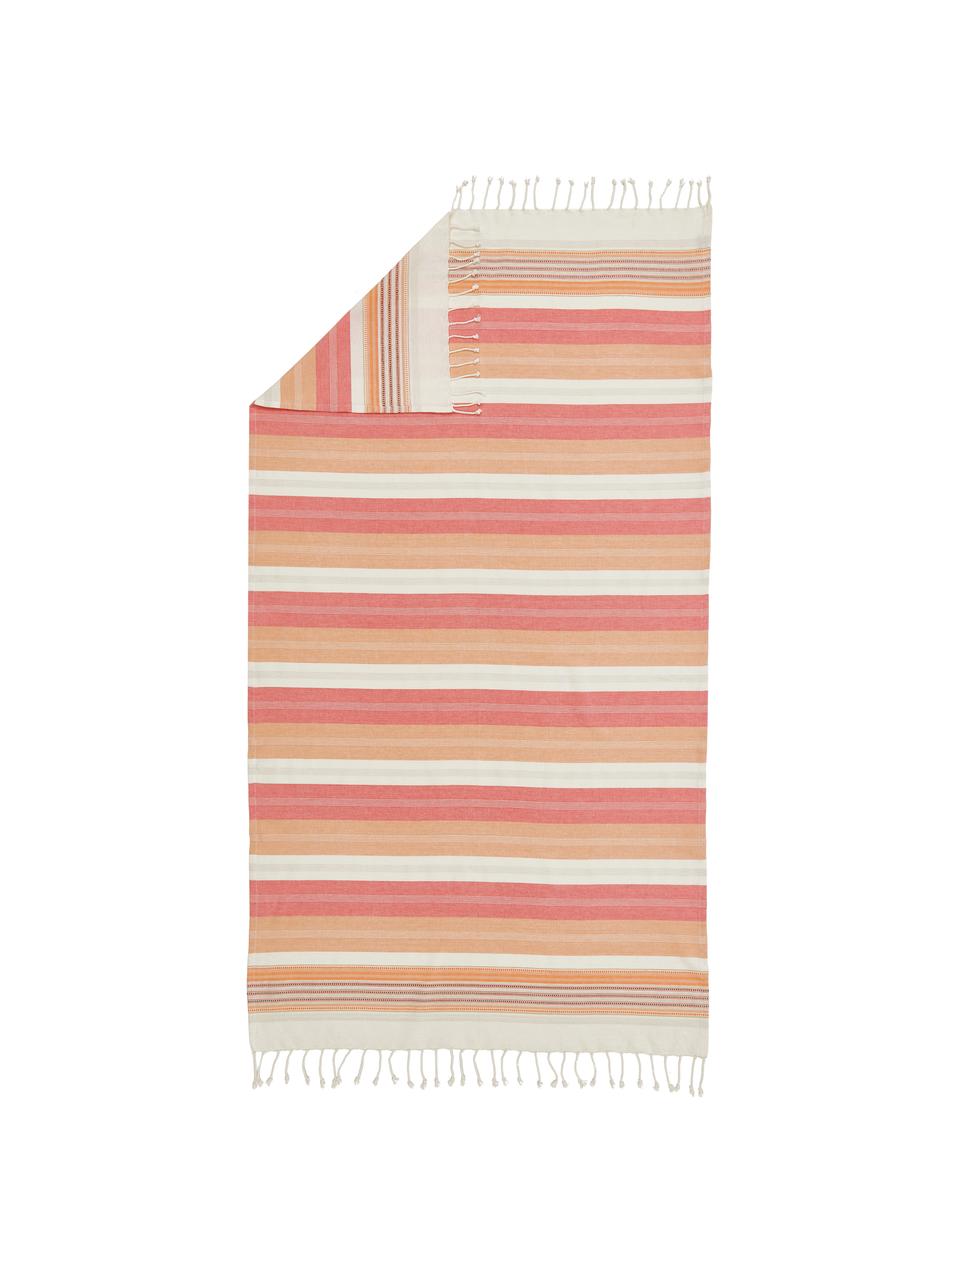 Hamamtuch Belize mit Fransen, 100 % Baumwolle, Pink, Orange, Weiß, B 100 x L 190 cm